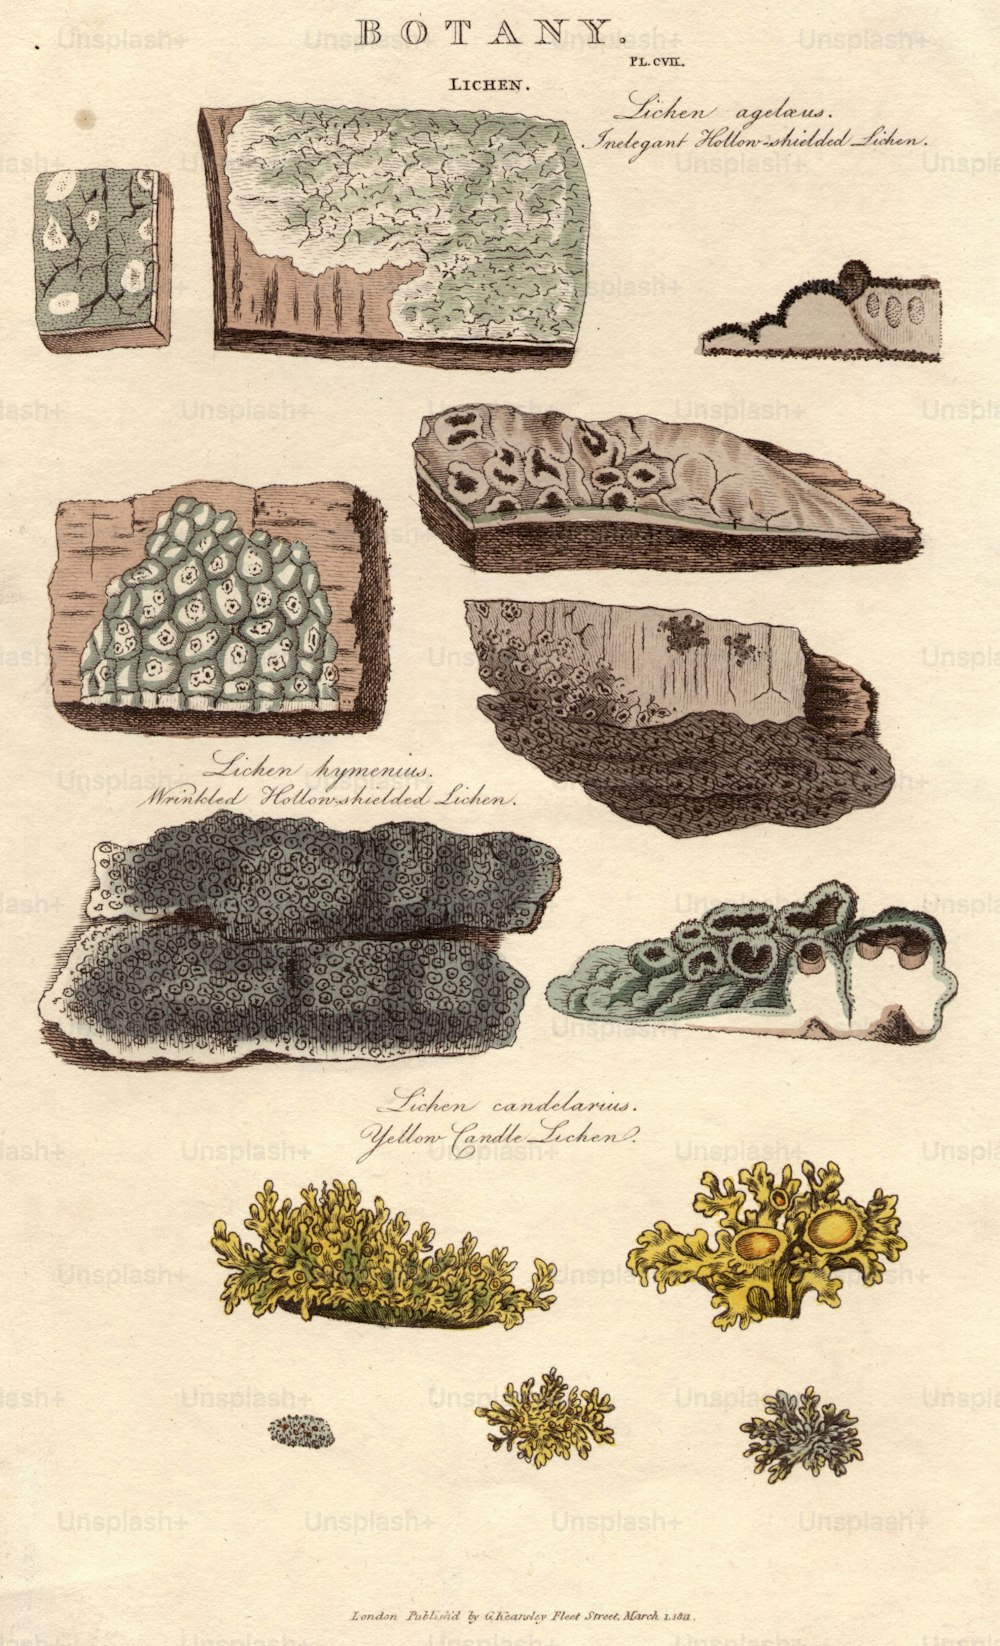 1812年3月1日:苔癬の様々な種:エレガントではない中空シールド地衣類(上)、しわの寄った中空シールド地衣類(中央)、黄色いキャンドル苔癬(下)。 (写真提供:Hulton Archive/Getty Images)